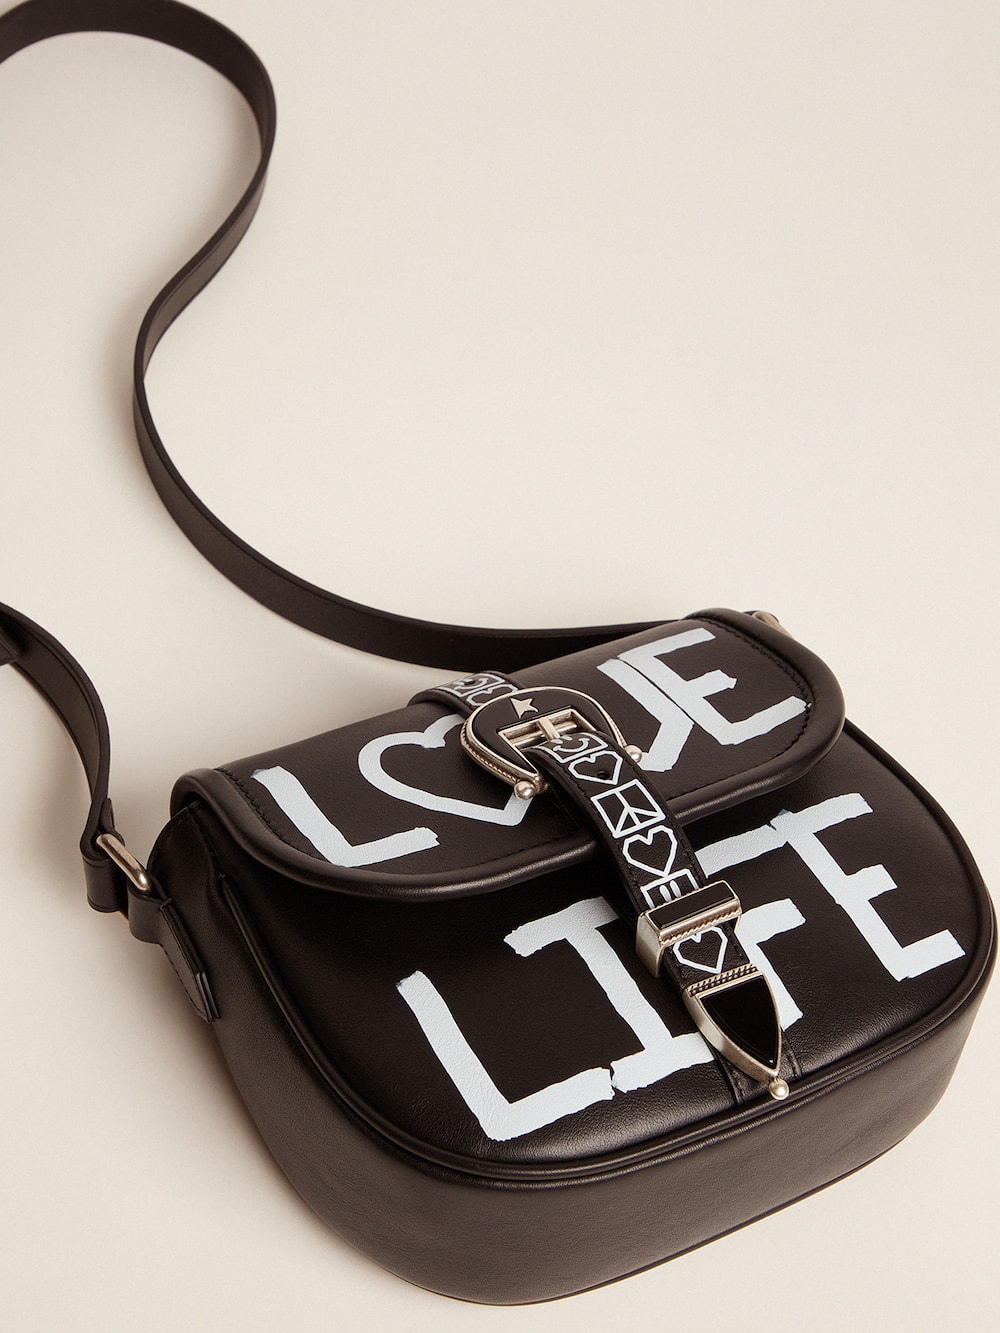 Golden Goose - Petit sac Rodeo Bag noir en cuir avec imprimé en sérigraphie « Love Life » in 